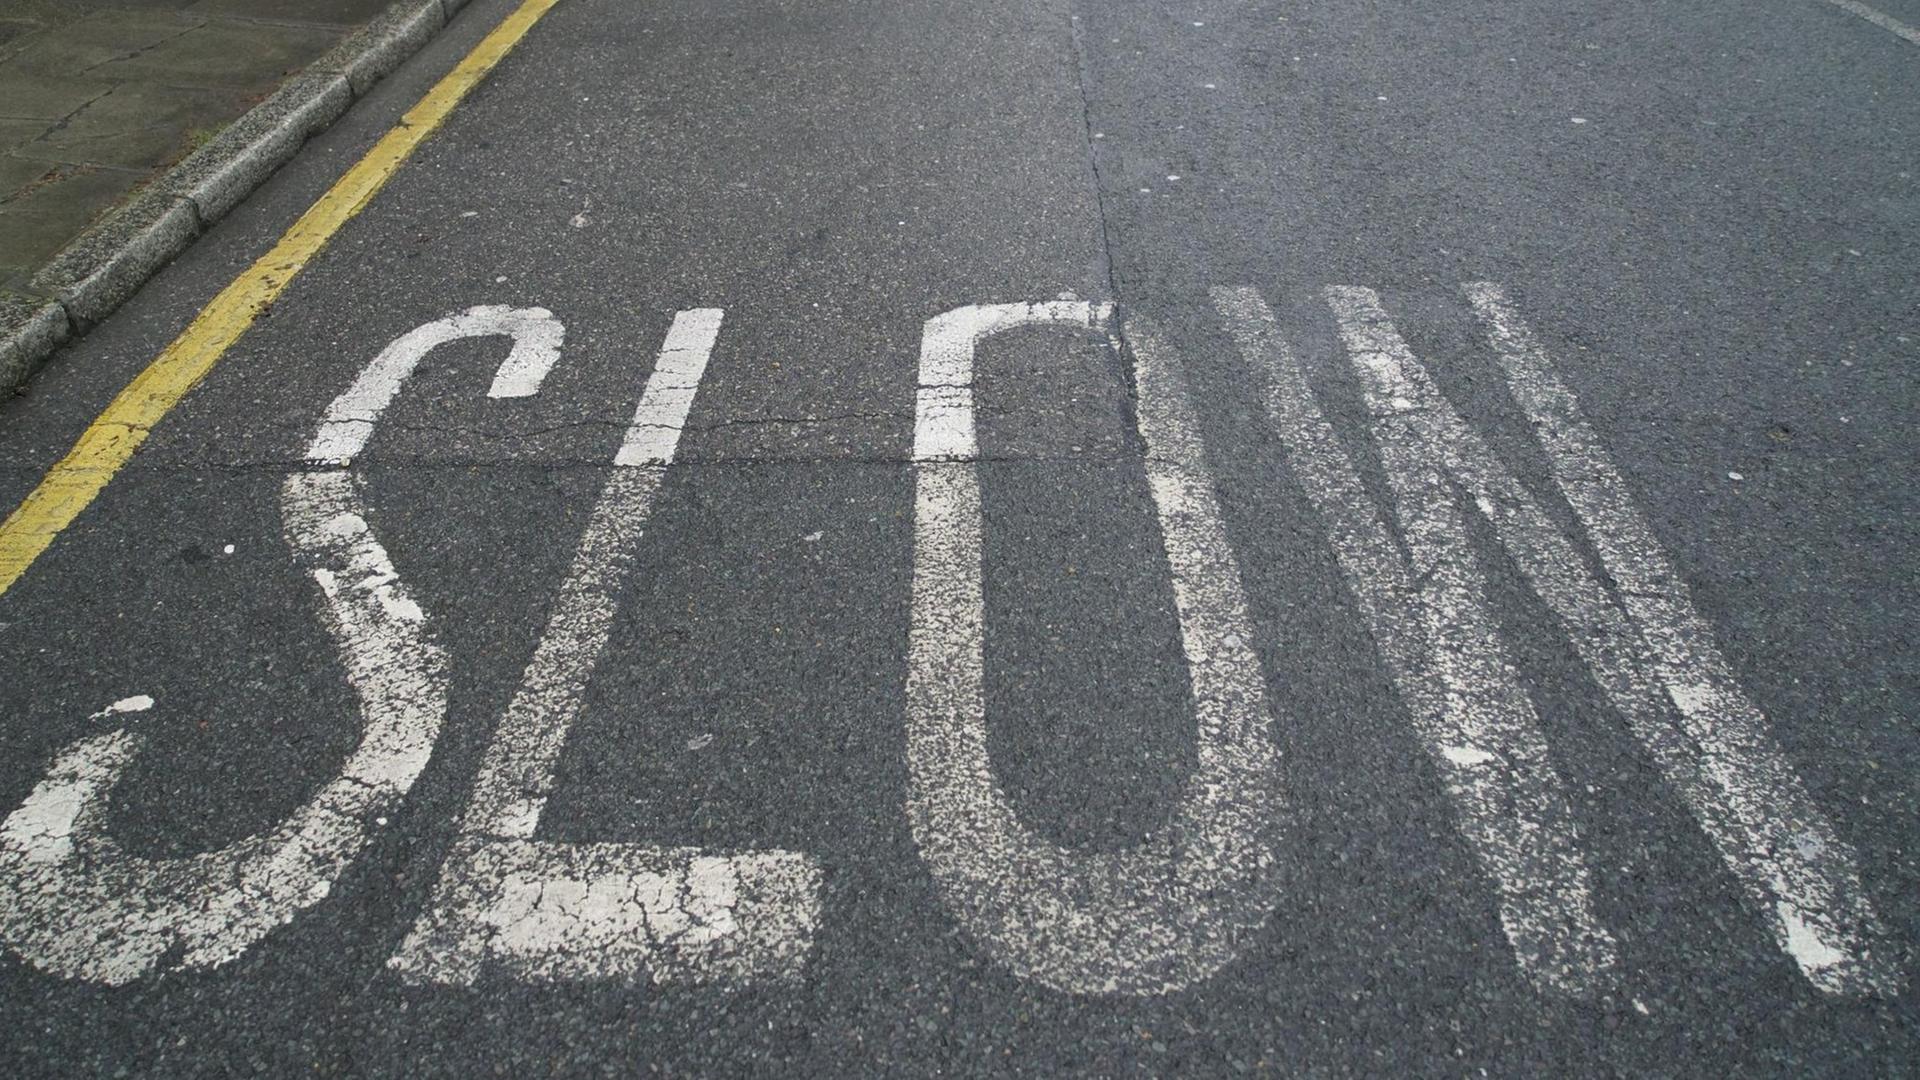 Das Wort "Slow" steht groß auf einer Straße.